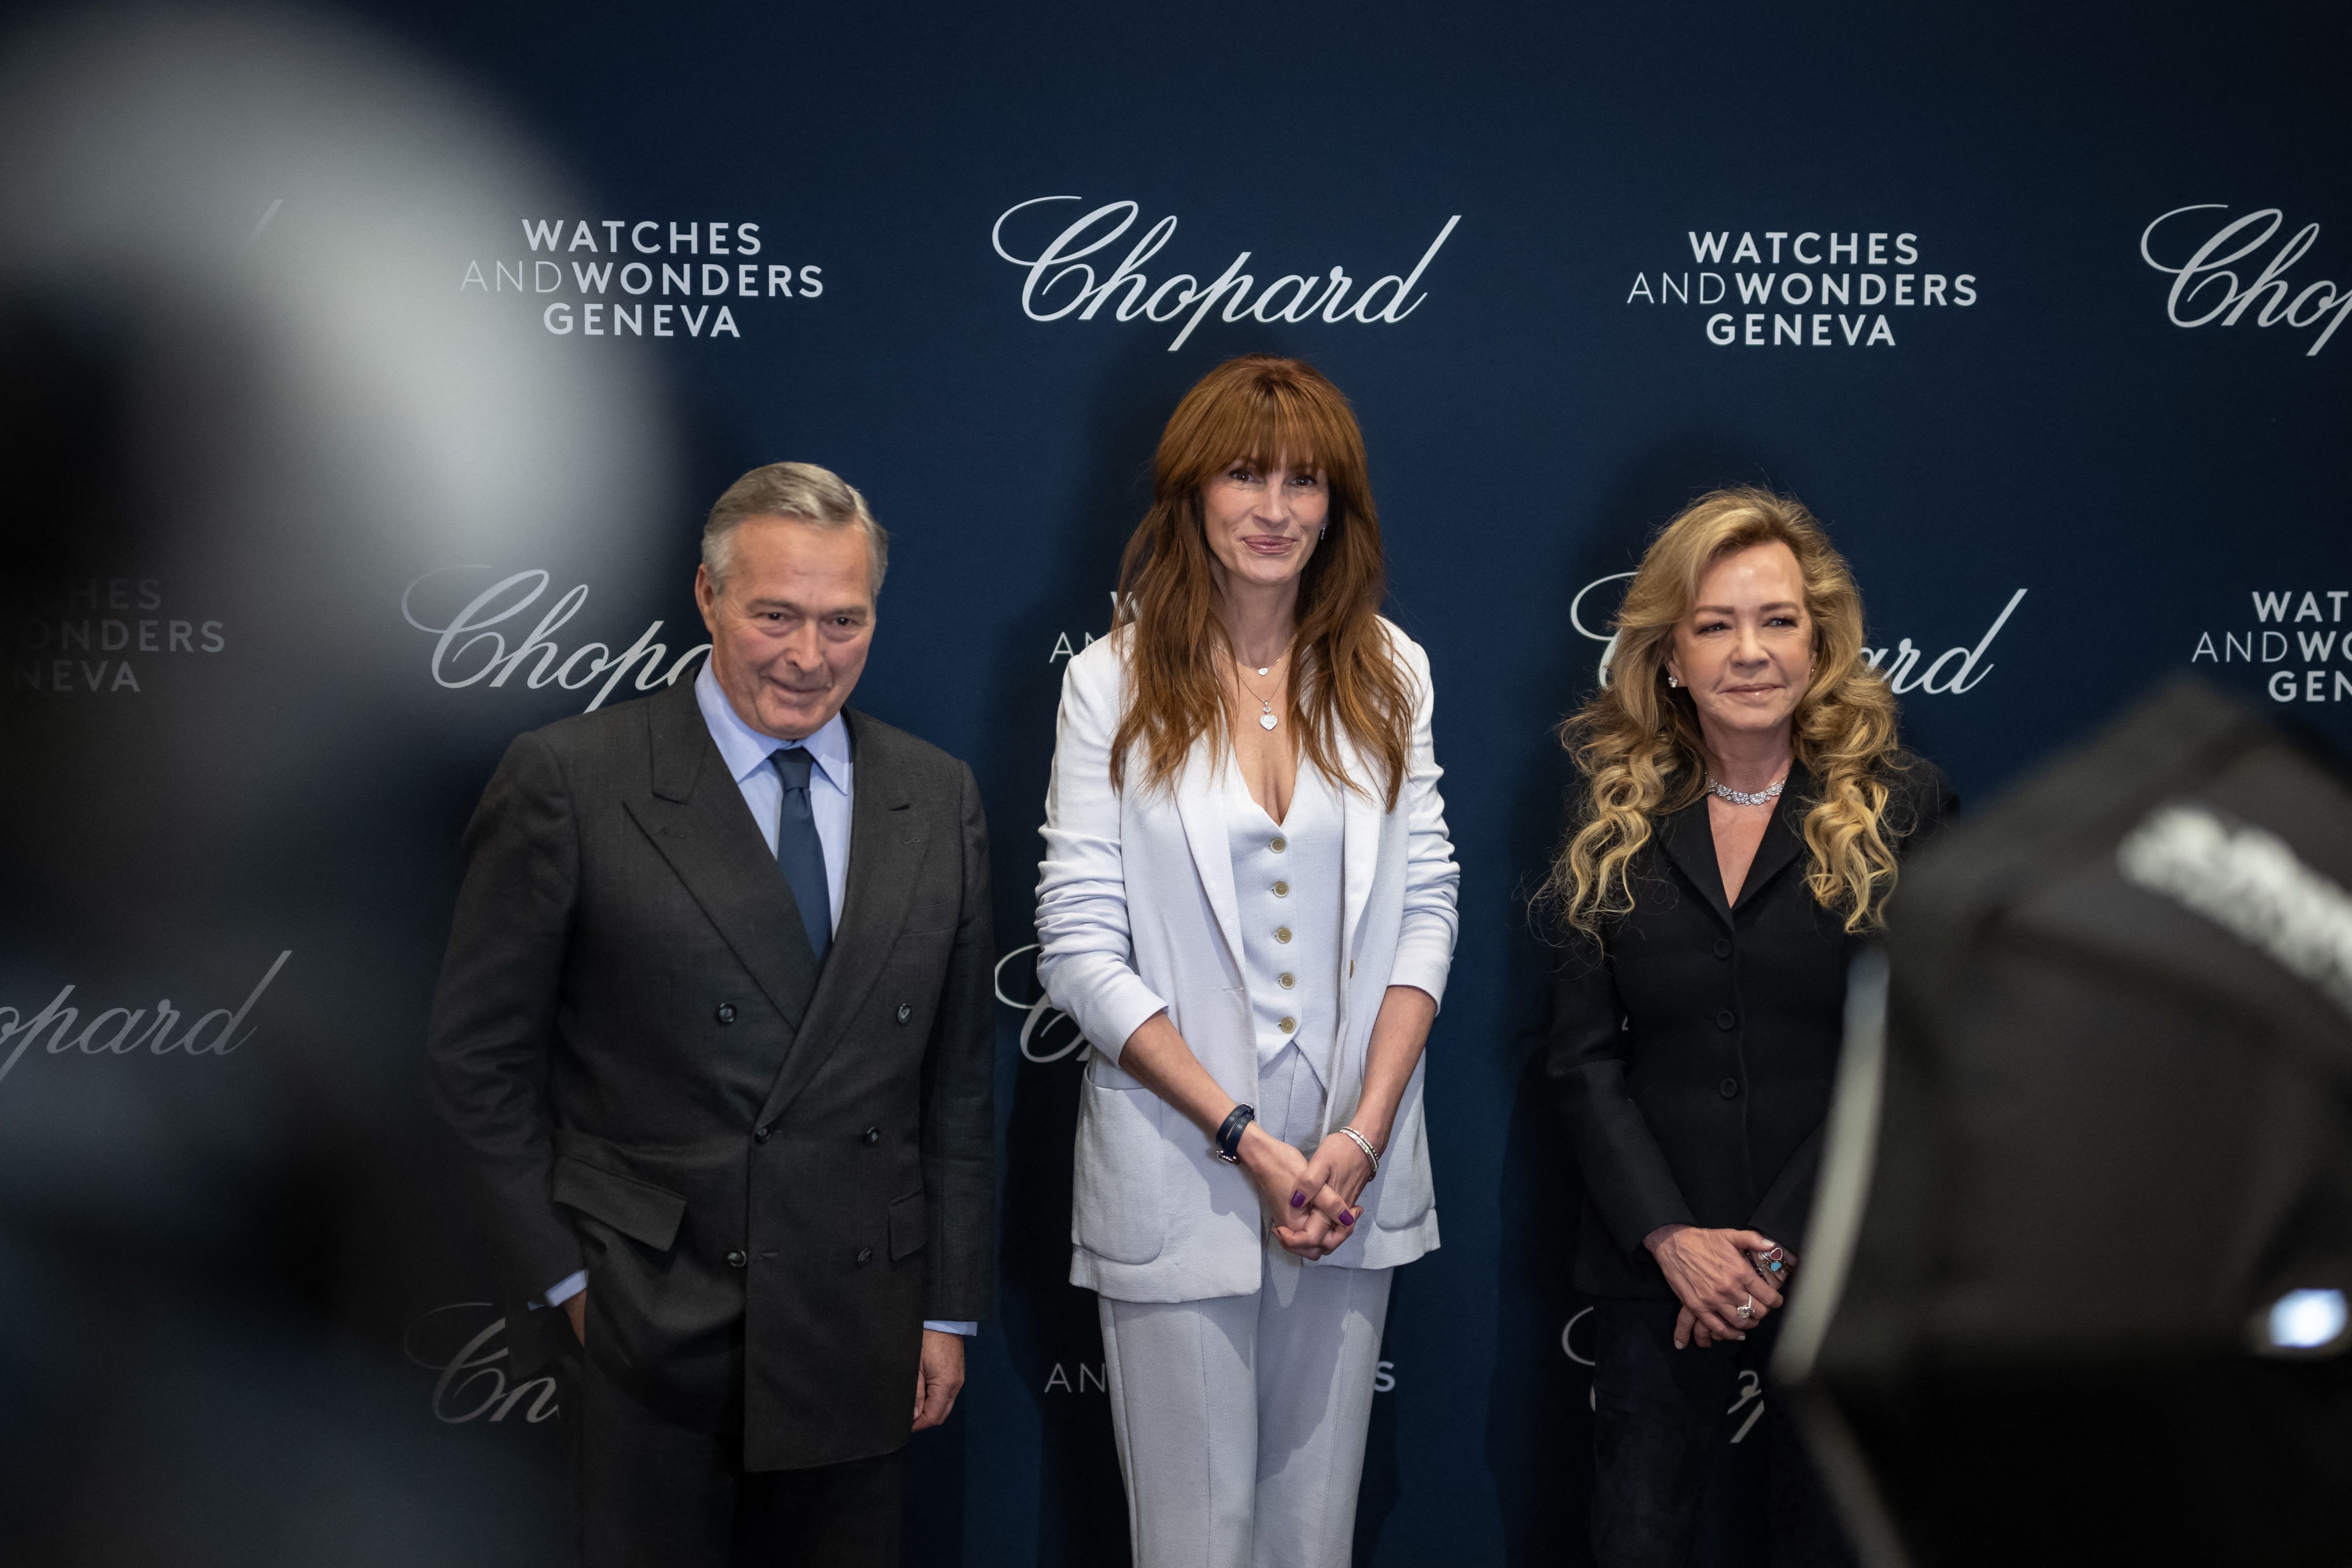 Les coprésidents allemands de Chopard, Karl-Friedrich Scheufele et Caroline Scheufele, sourient avec Julia Roberts lors du salon de l'horlogerie de luxe Watches and Wonders Geneva, en Suisse, le 27 mars 2023.